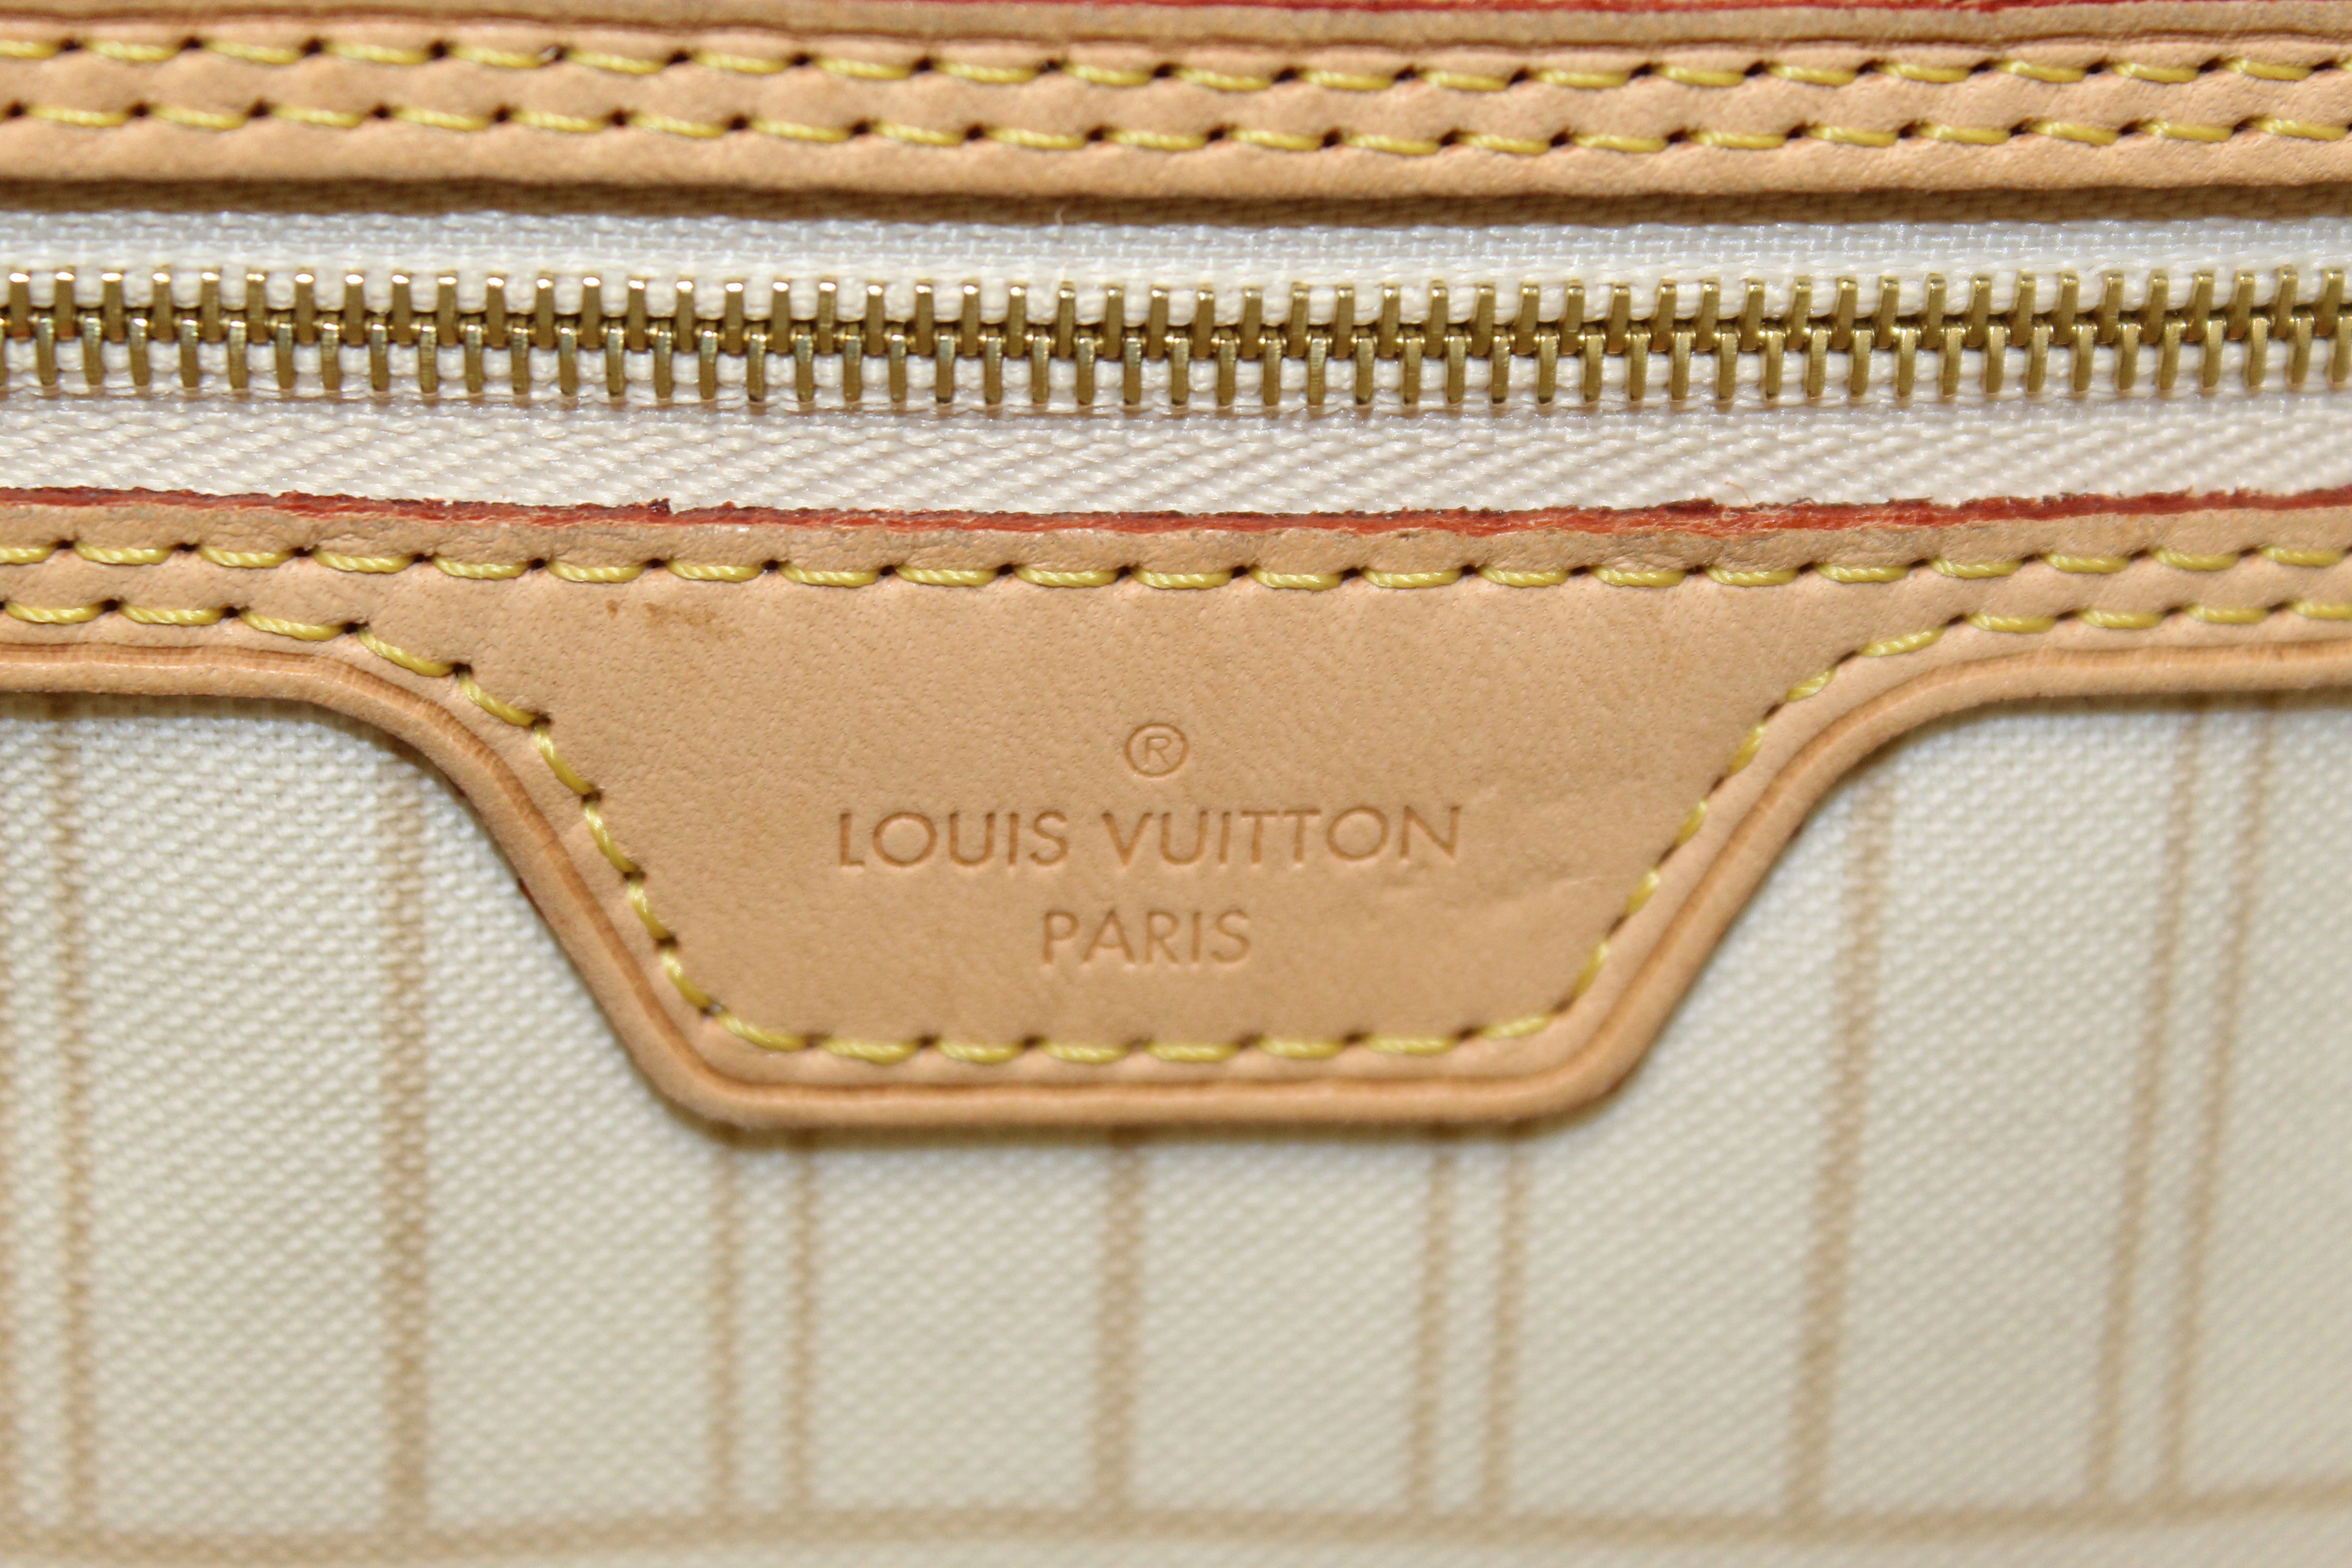 Authentic Louis Vuitton Damier Azur Neverfull GM Tote Shoulder Bag